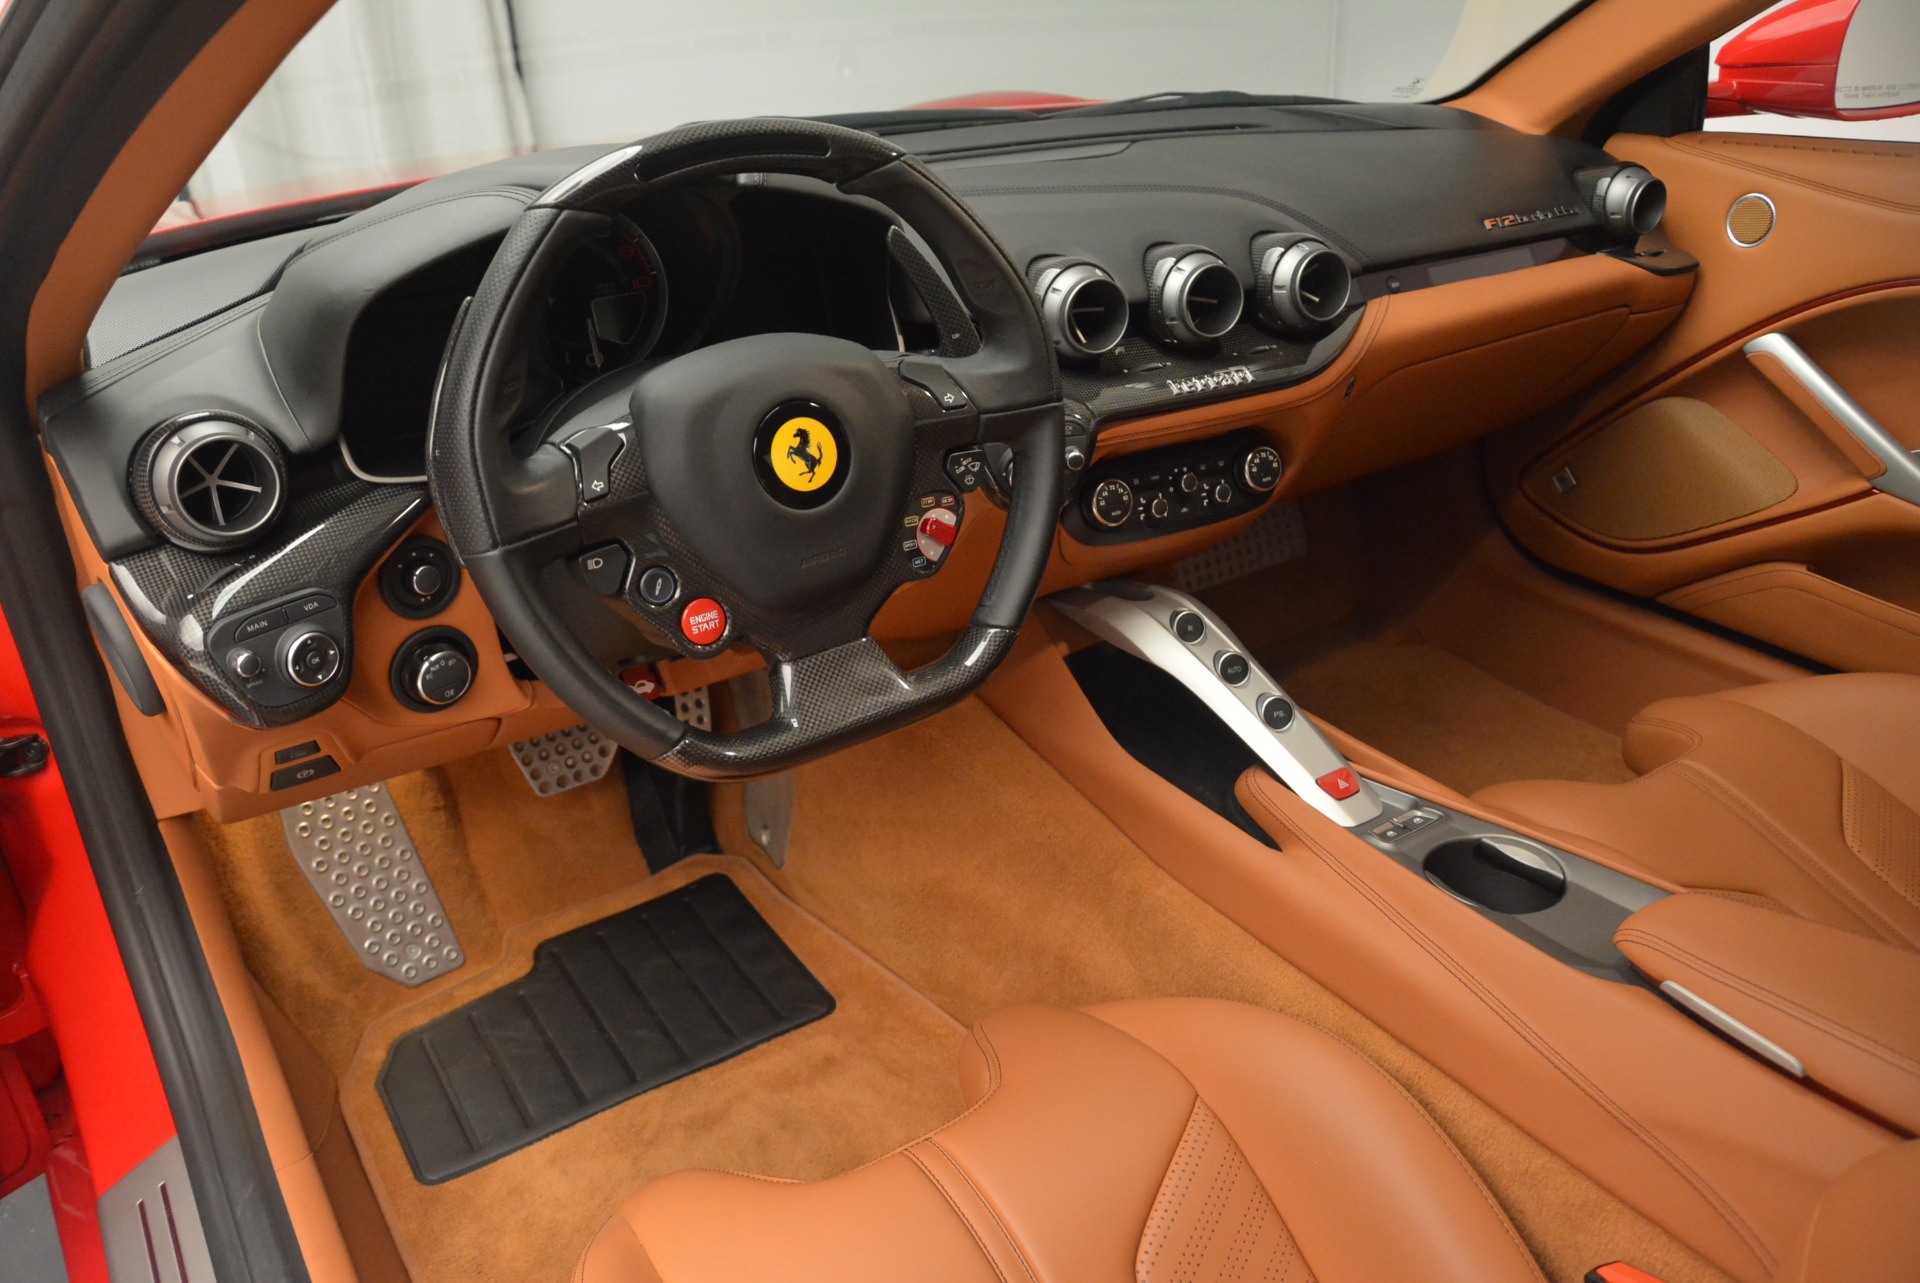 2014 Ferrari F12 Berlinetta - Rosso Corsa - Walkaround & Interior